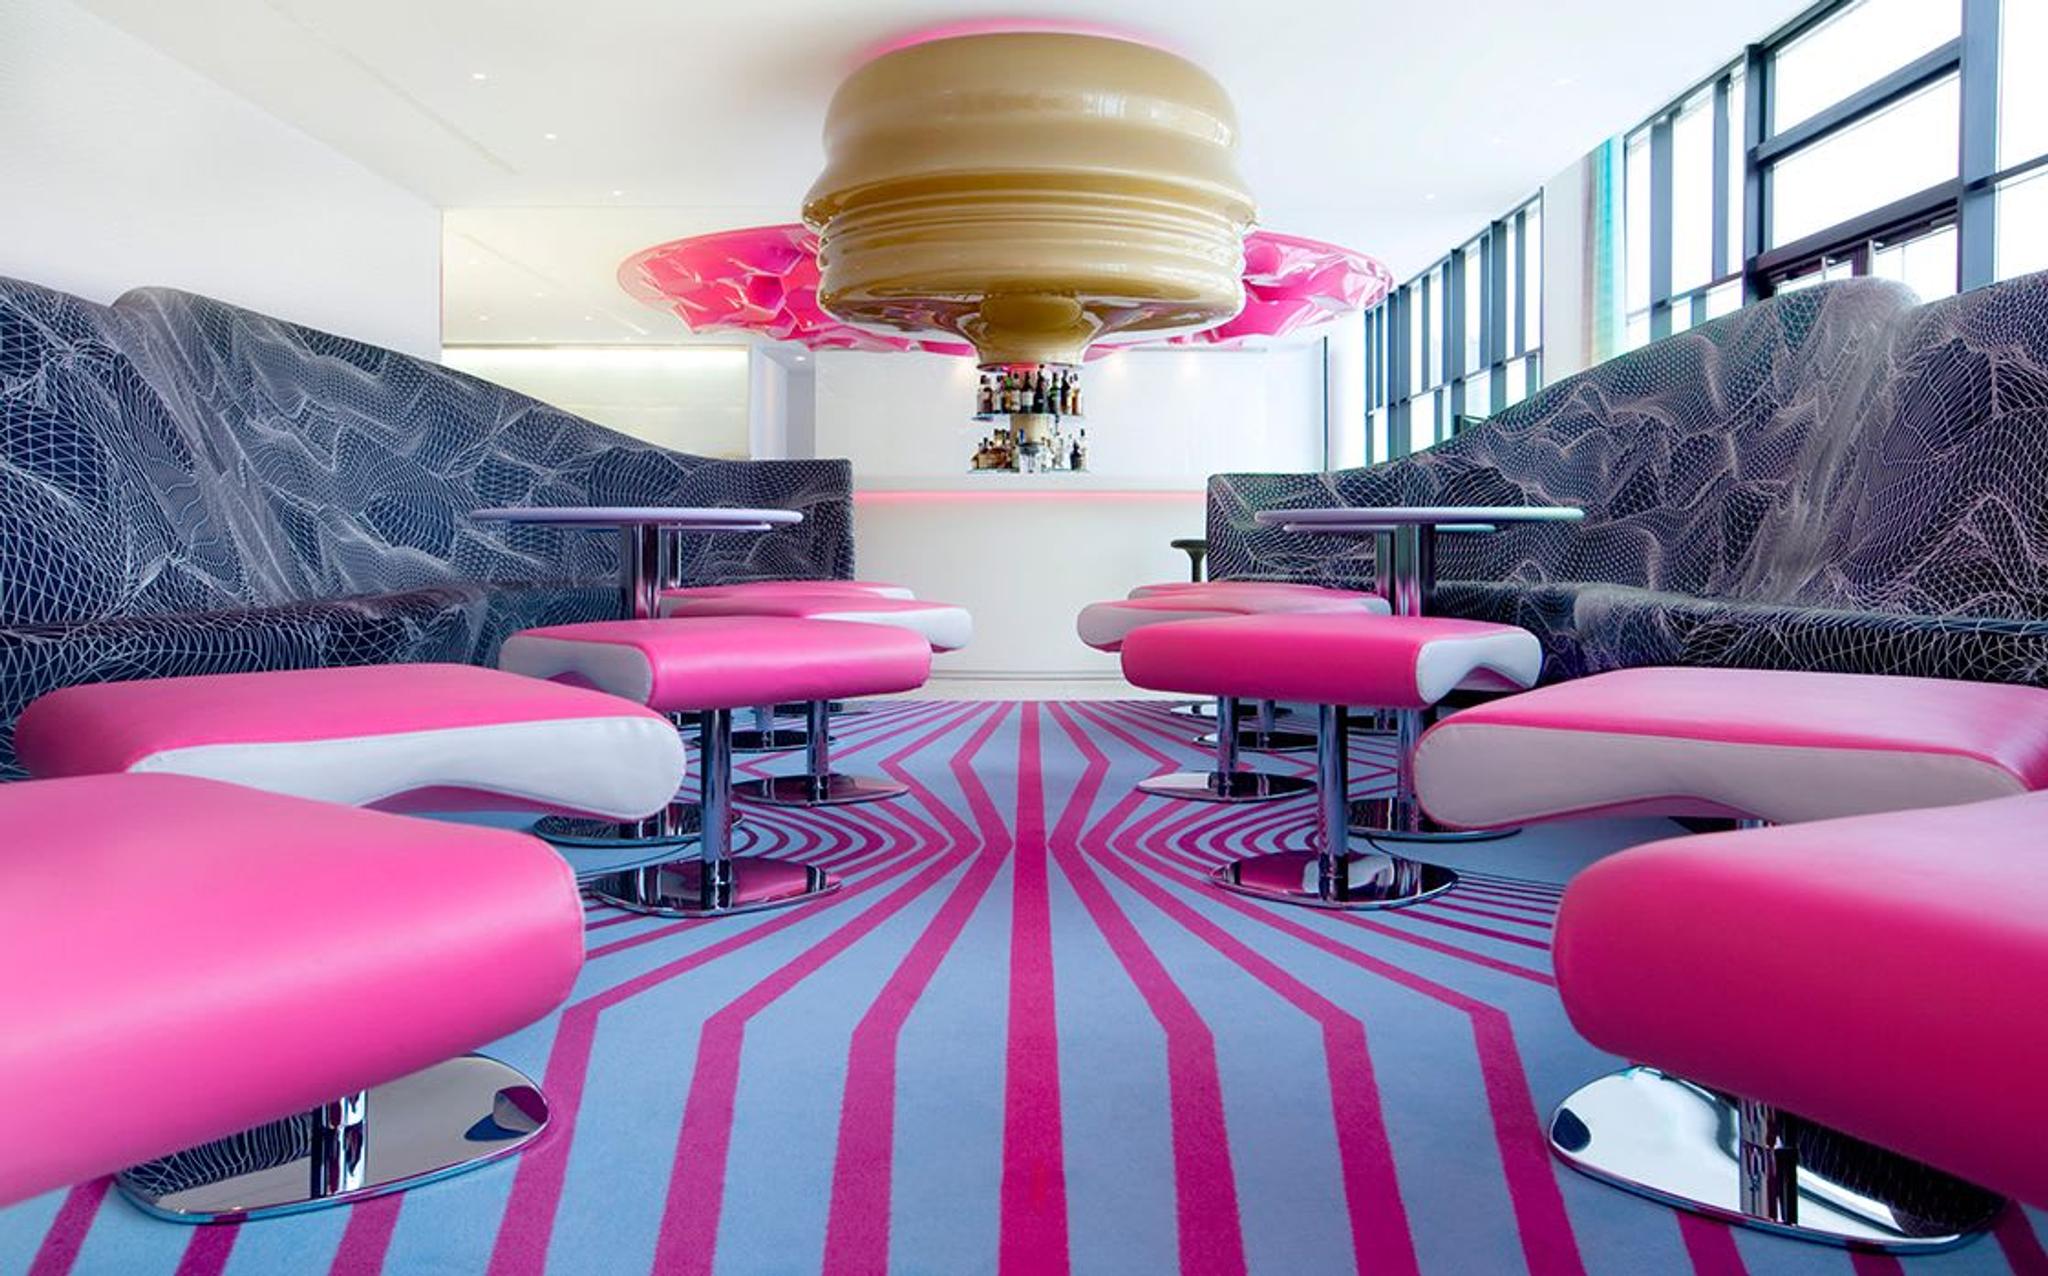 Interiores del Hotel Nhow Berlin diseñados por Karim Rashid y Sergei Tchoban